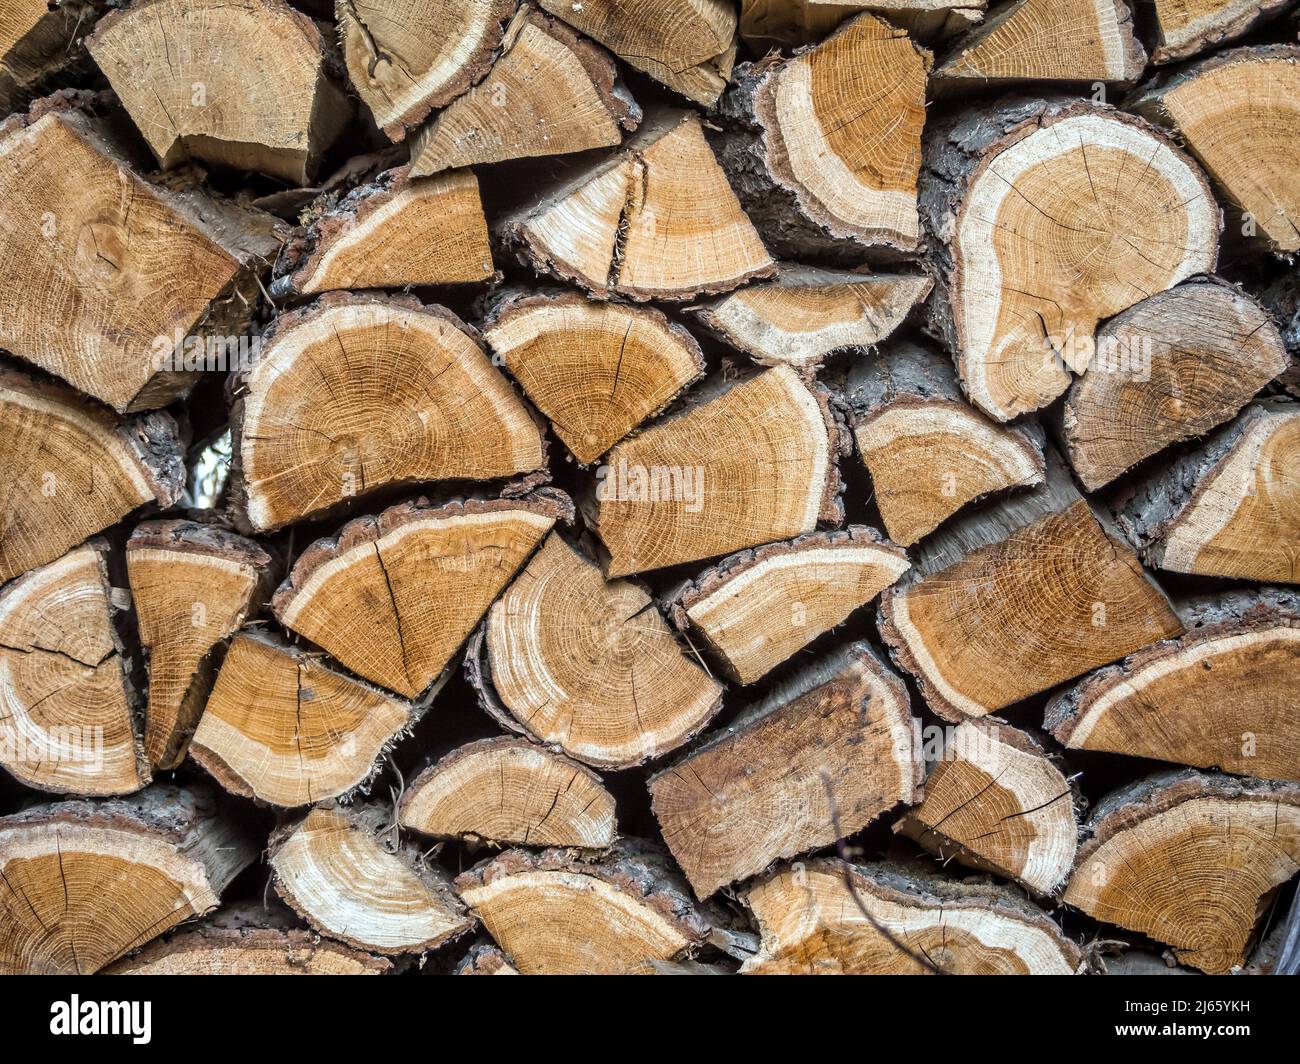 Primo piano di legna da ardere di quercia tagliata e impilata Foto Stock